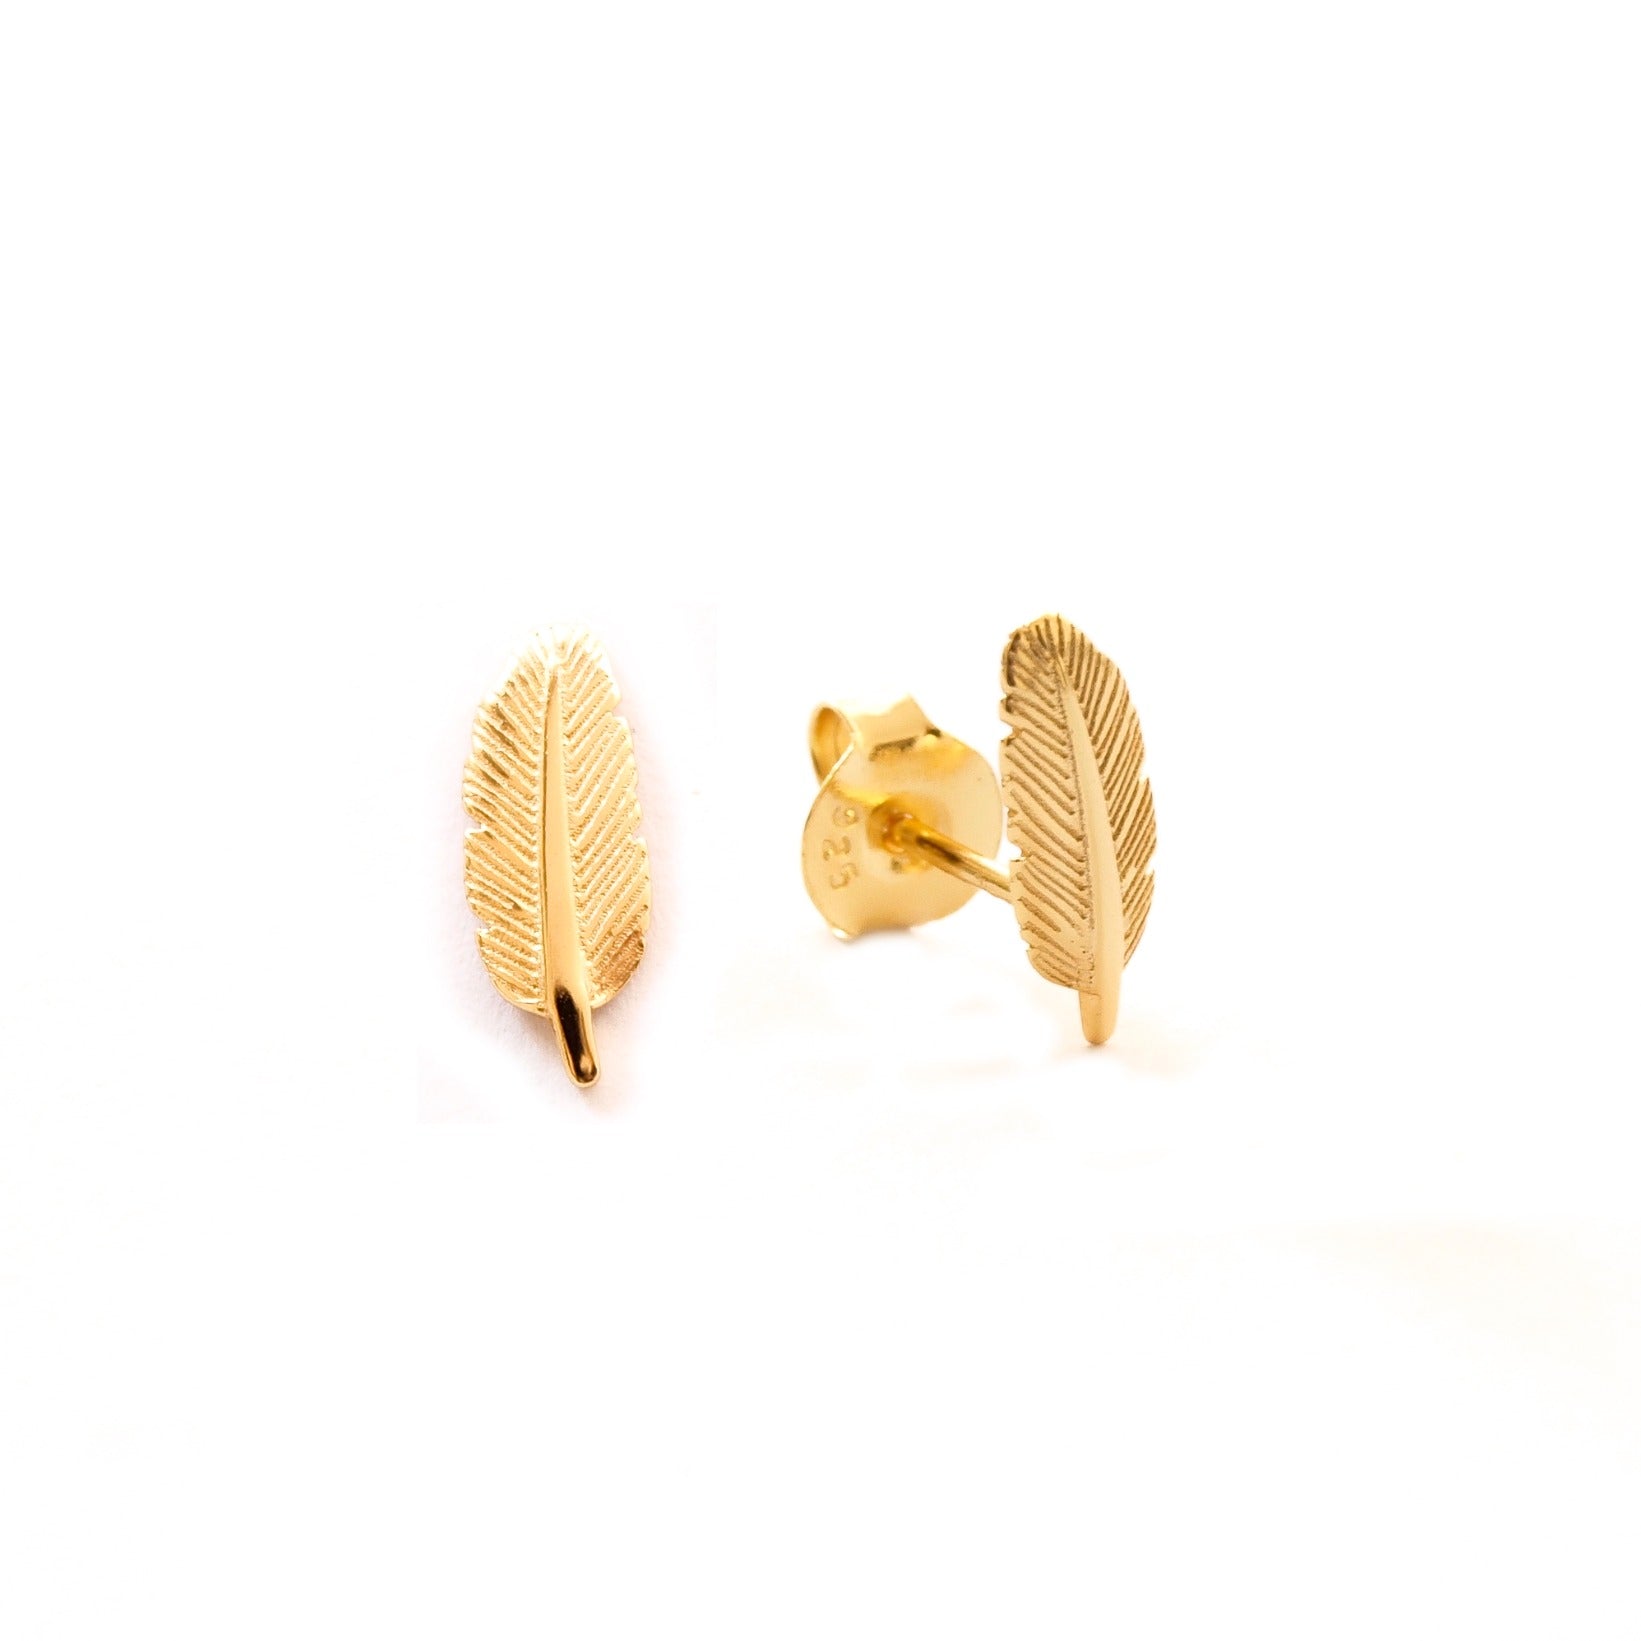 Feather gold - ByMirelae